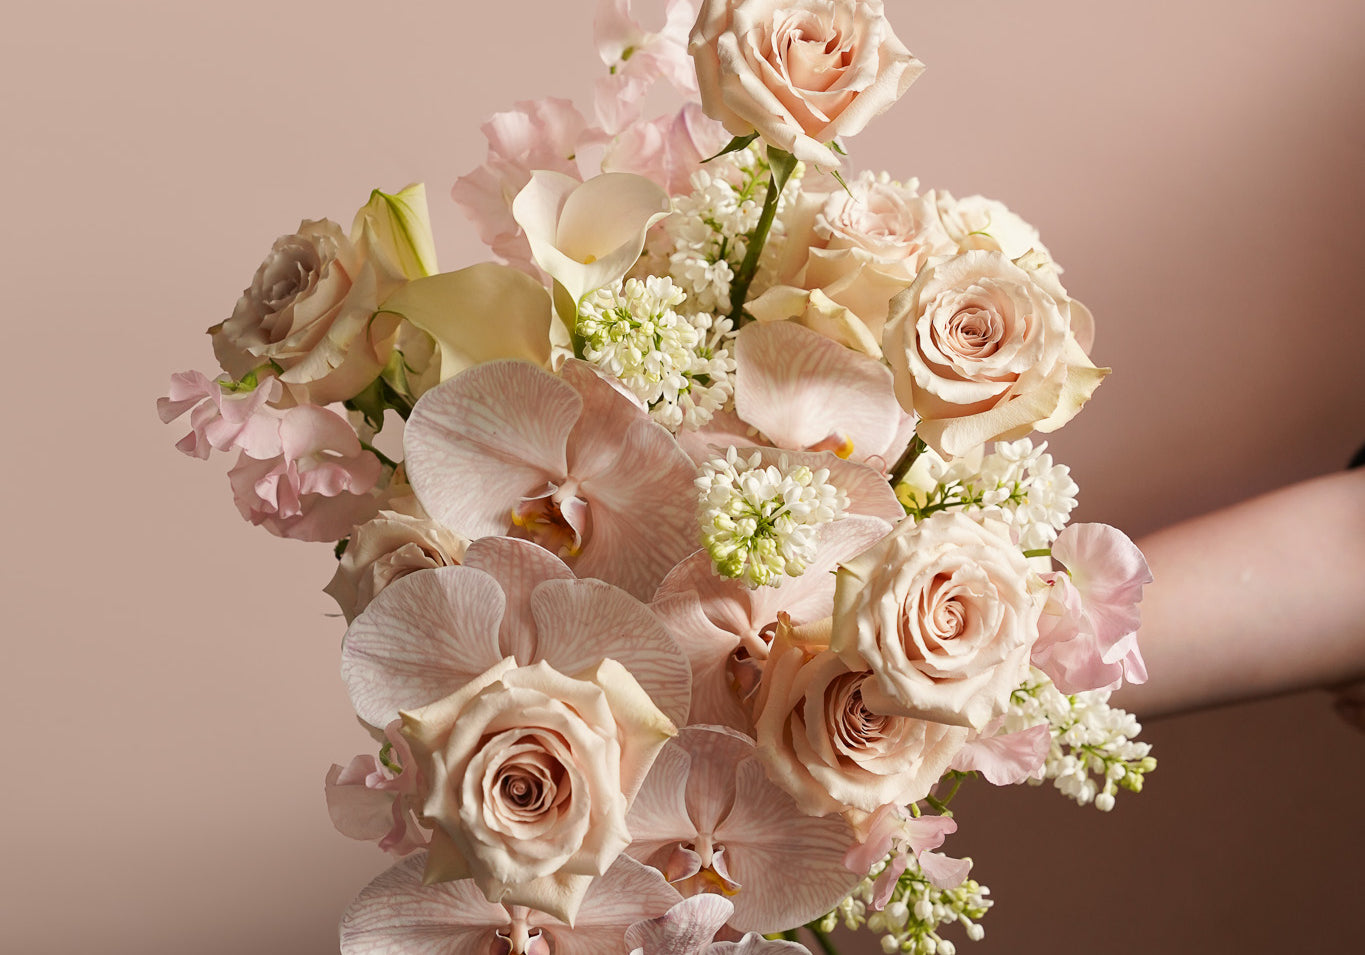 Ellermann_Flowers_Bridal_Bouquet for Pumpkinjenn_Rose and orchid bouquet